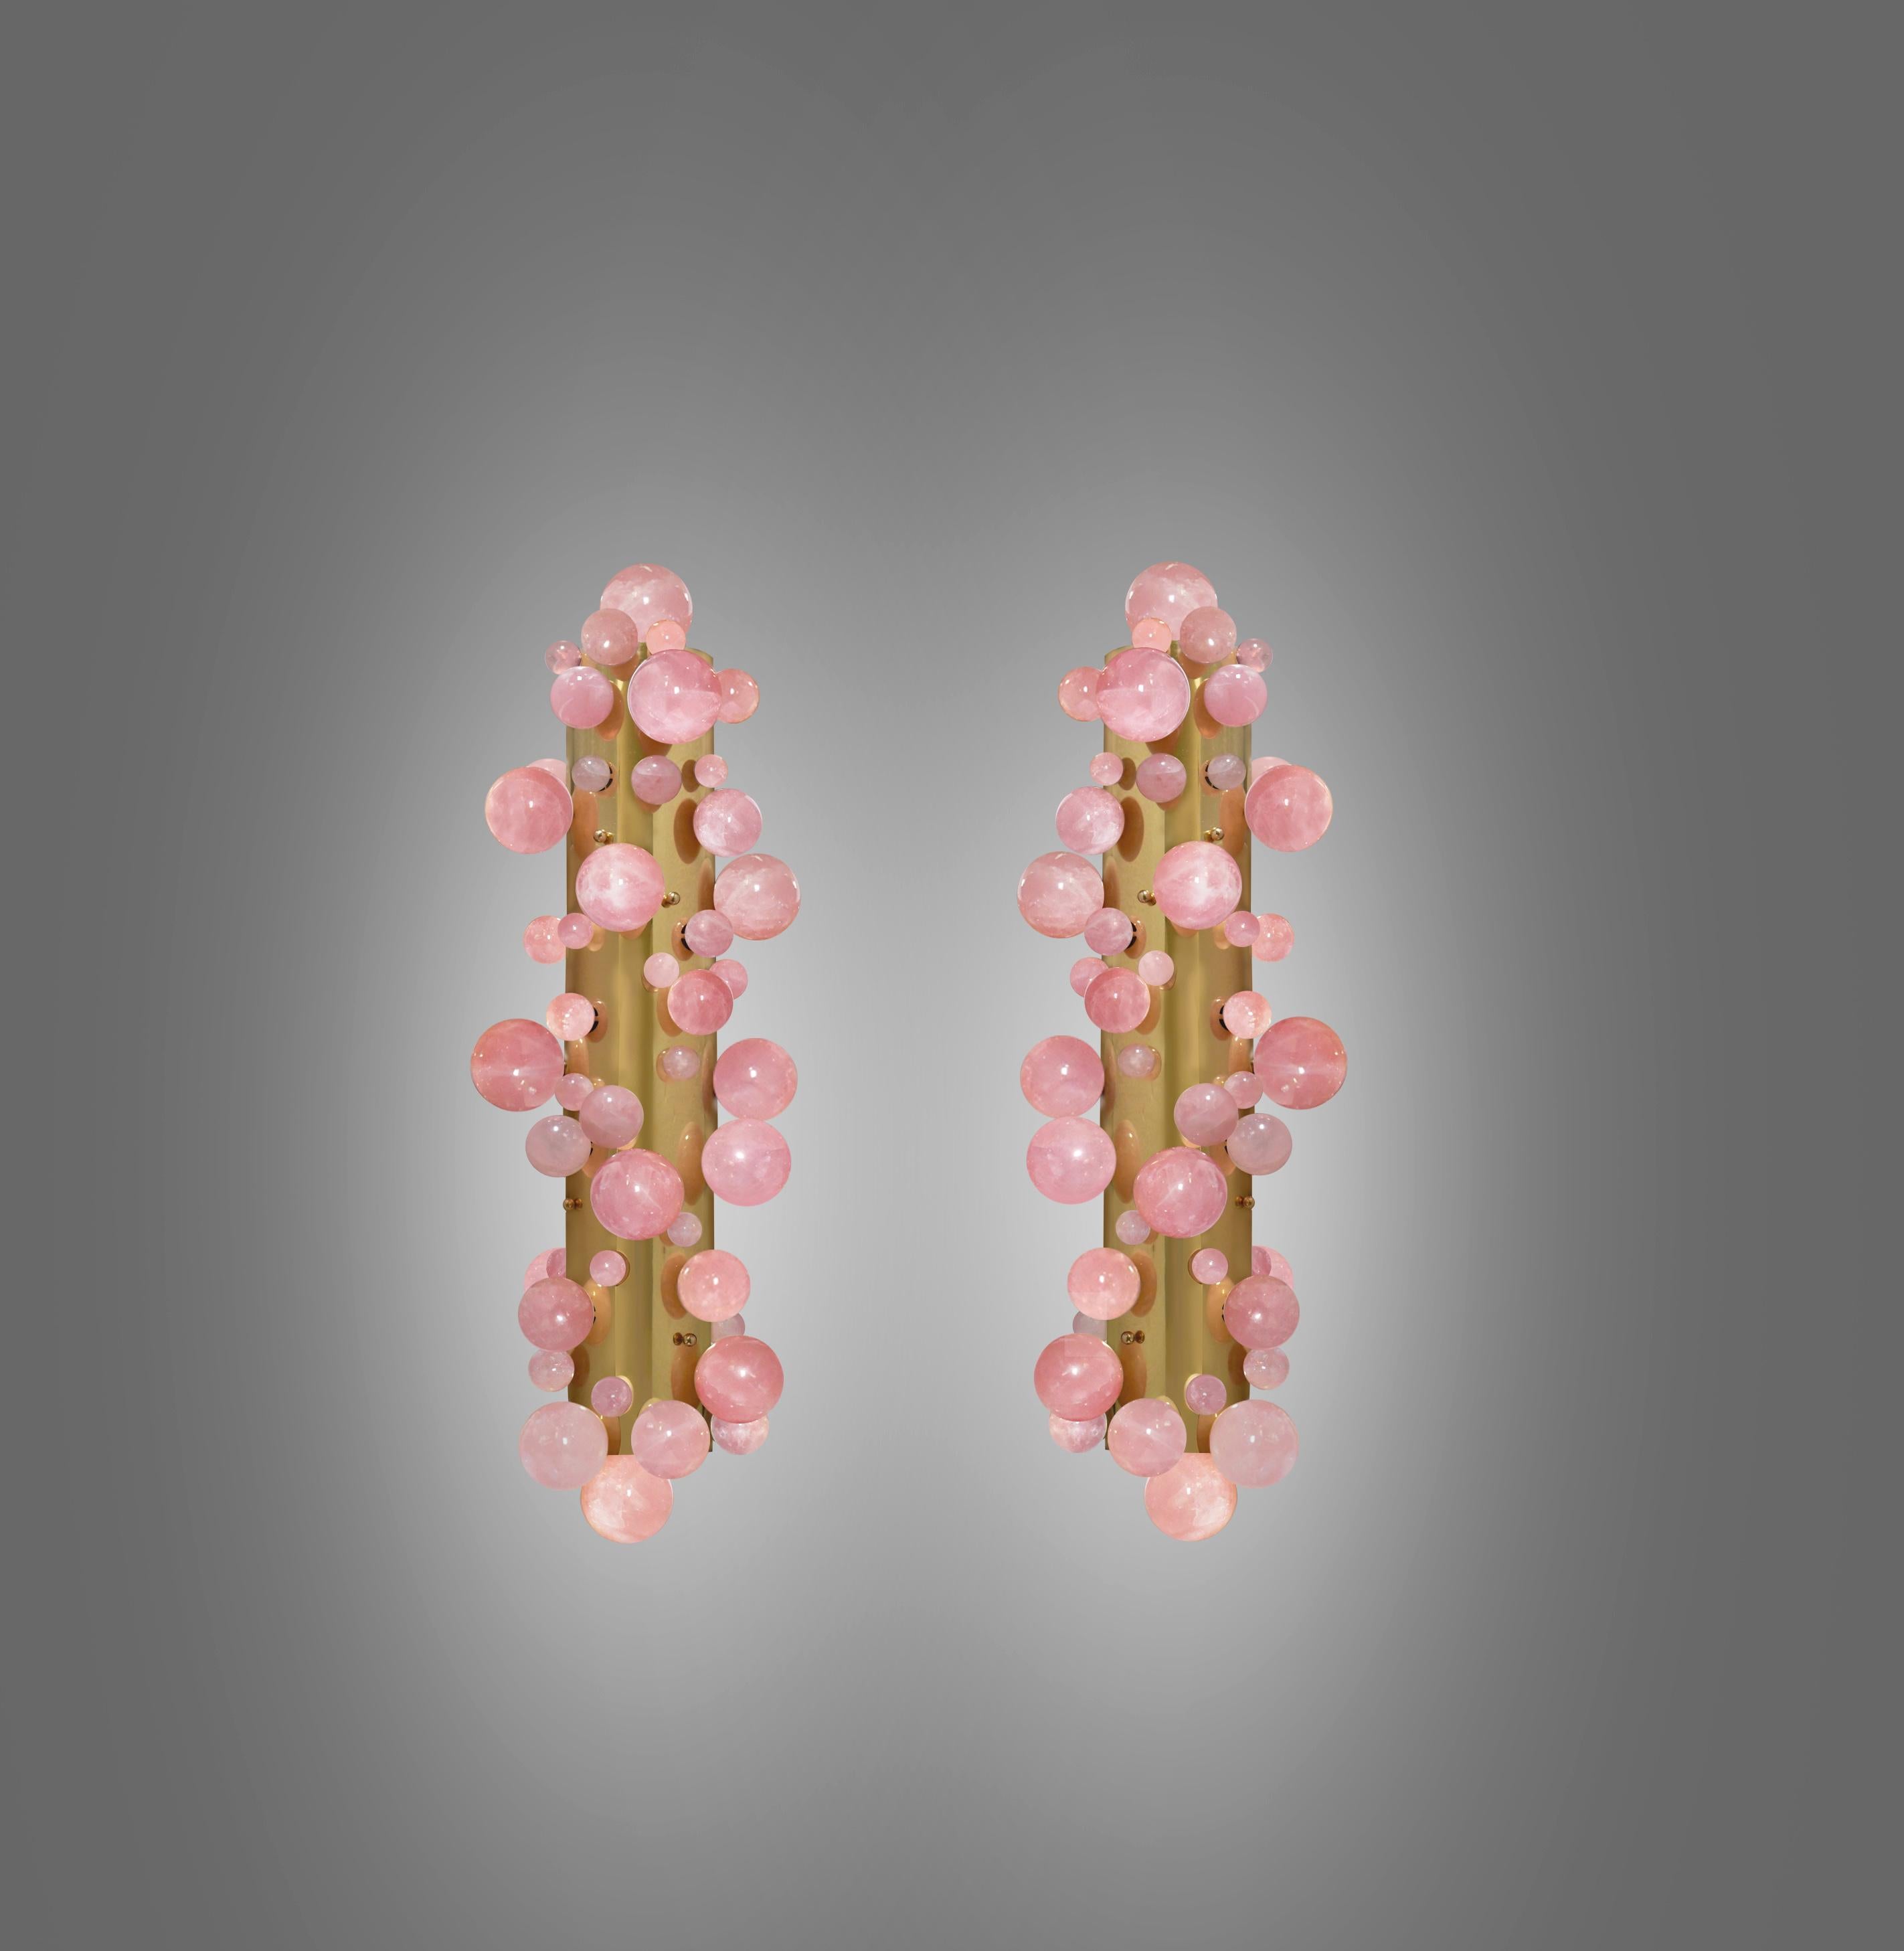 Paire d'appliques à bulles en quartz rose avec finitions en laiton poli. Créé par la Phoenix Gallery NYC.
Chaque applique est équipée de quatre douilles. Utilise quatre ampoules LED chaudes de 60w. Total 240w max. Ampoules incluses.
Dimensions et